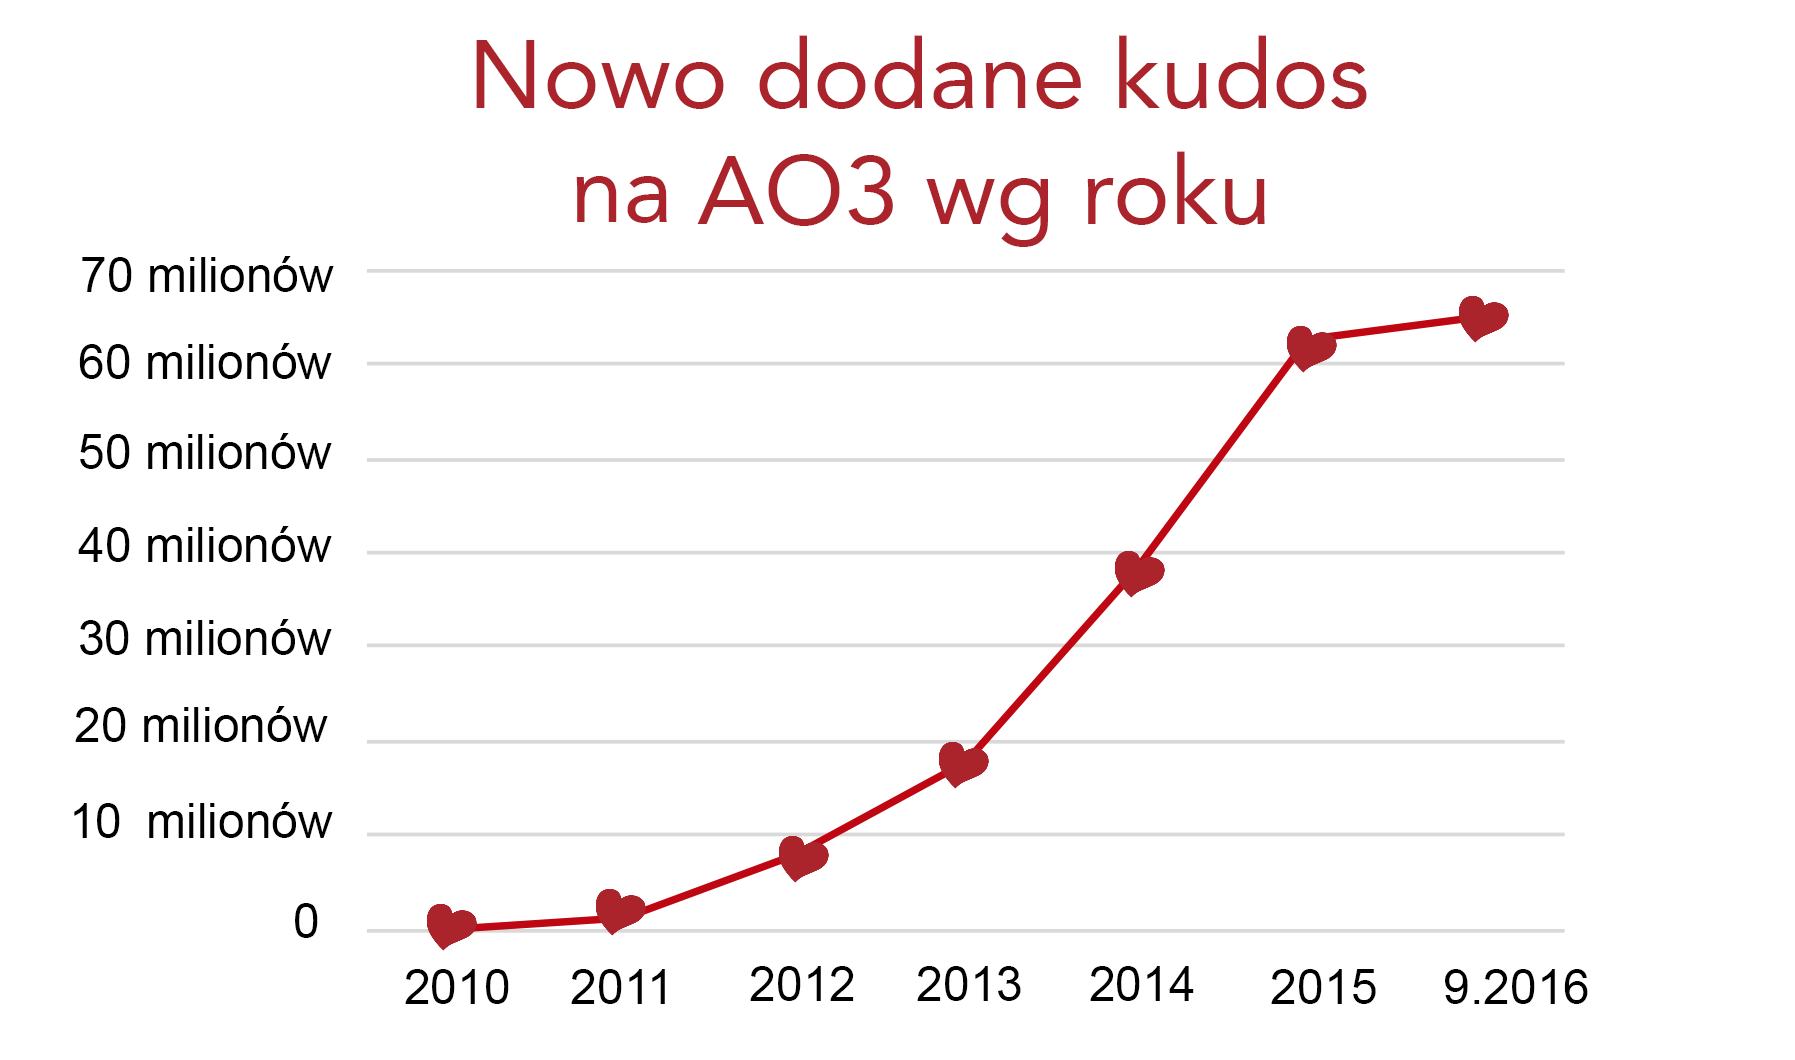 Grafika przedstawiająca przyrost kudos na AO3, od zera w 2010 roku do ponad 60 milionów we wrześniu 2016.